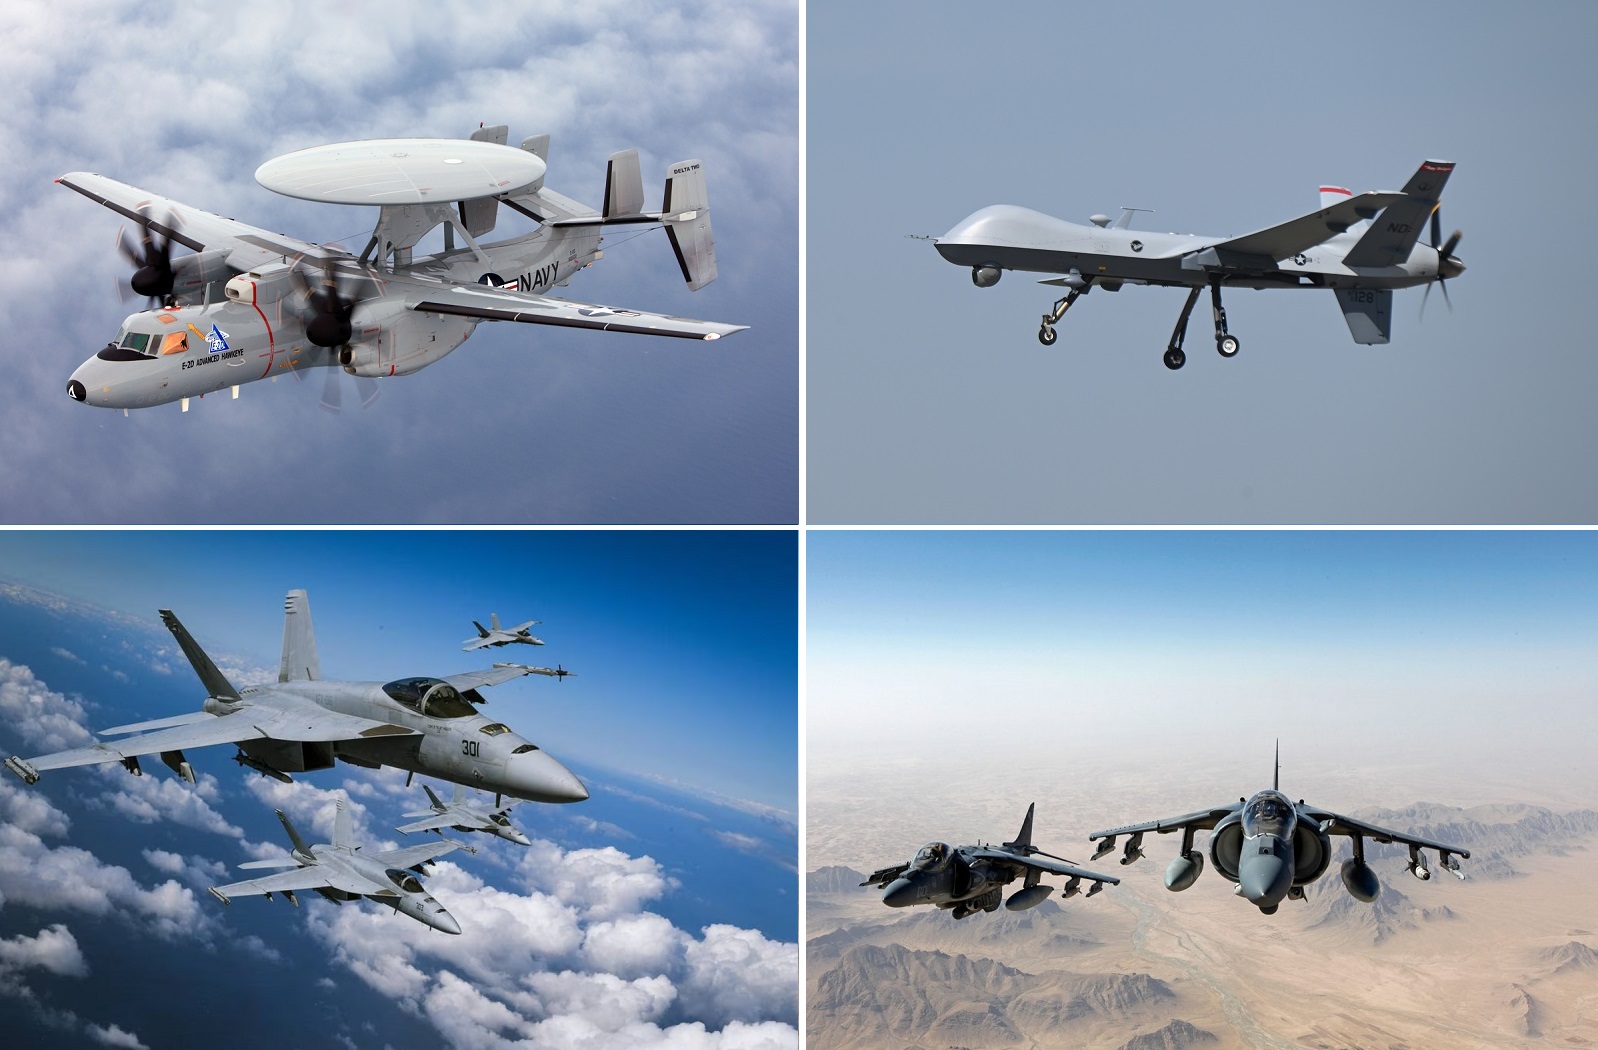 L'MQ-9 Reaper ha trasmesso le coordinate dell'obiettivo ai caccia F/A-18 Hornet e agli aerei d'attacco AV-8B Harrier dall'altra parte del mondo.